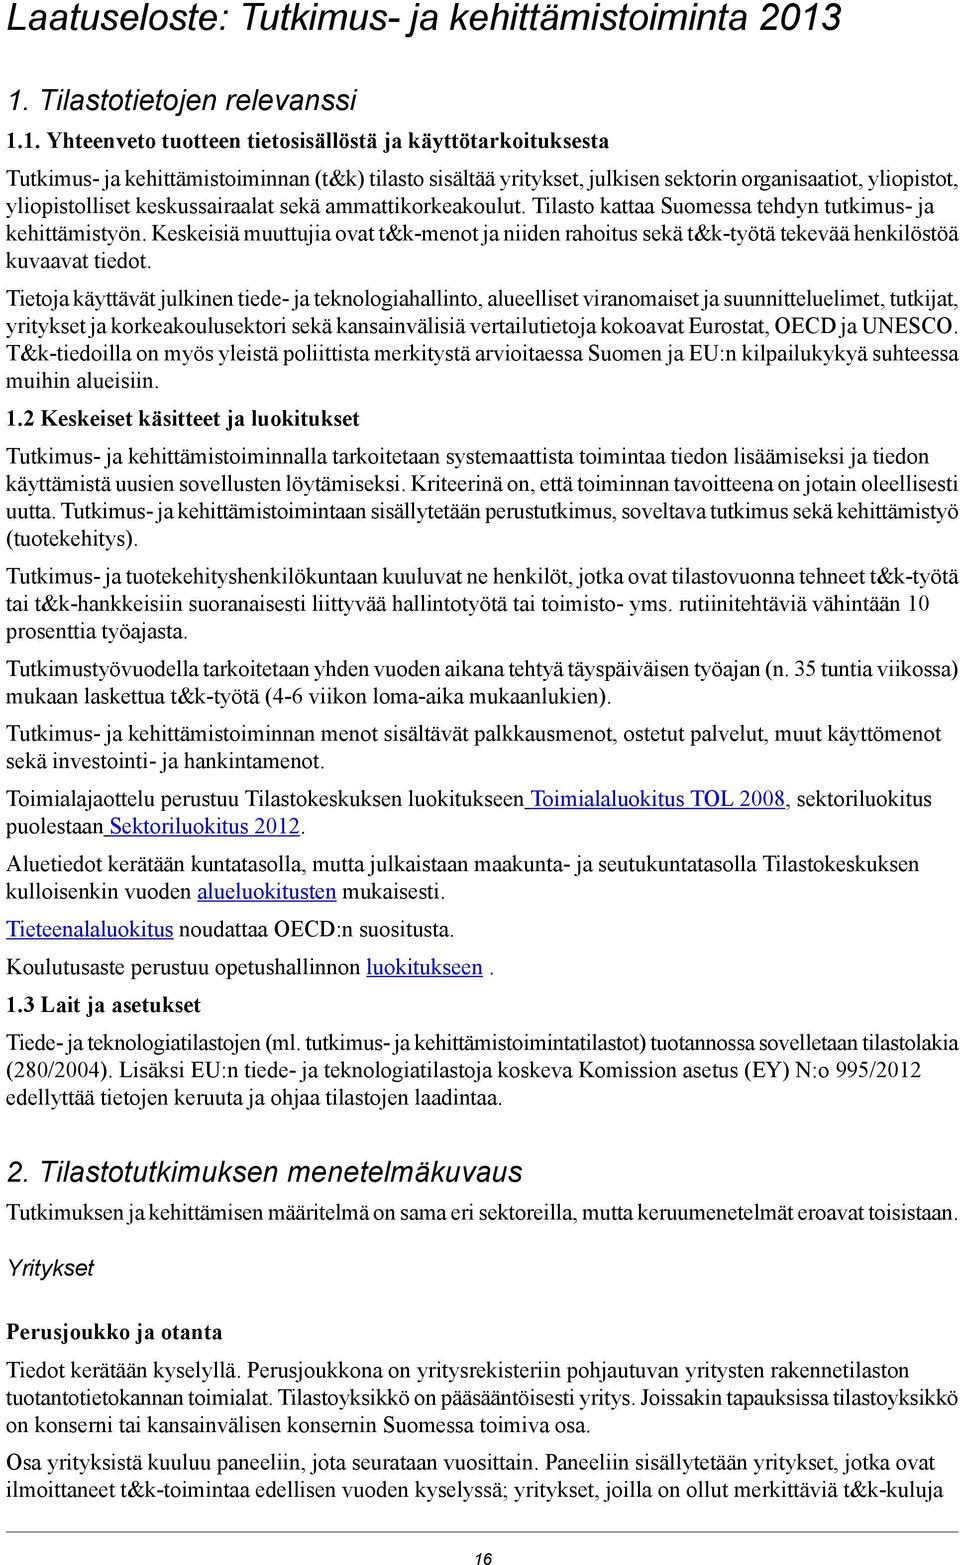 yliopistot, yliopistolliset keskussairaalat sekä ammattikorkeakoulut. Tilasto kattaa Suomessa tehdyn tutkimus- ja kehittämistyön.